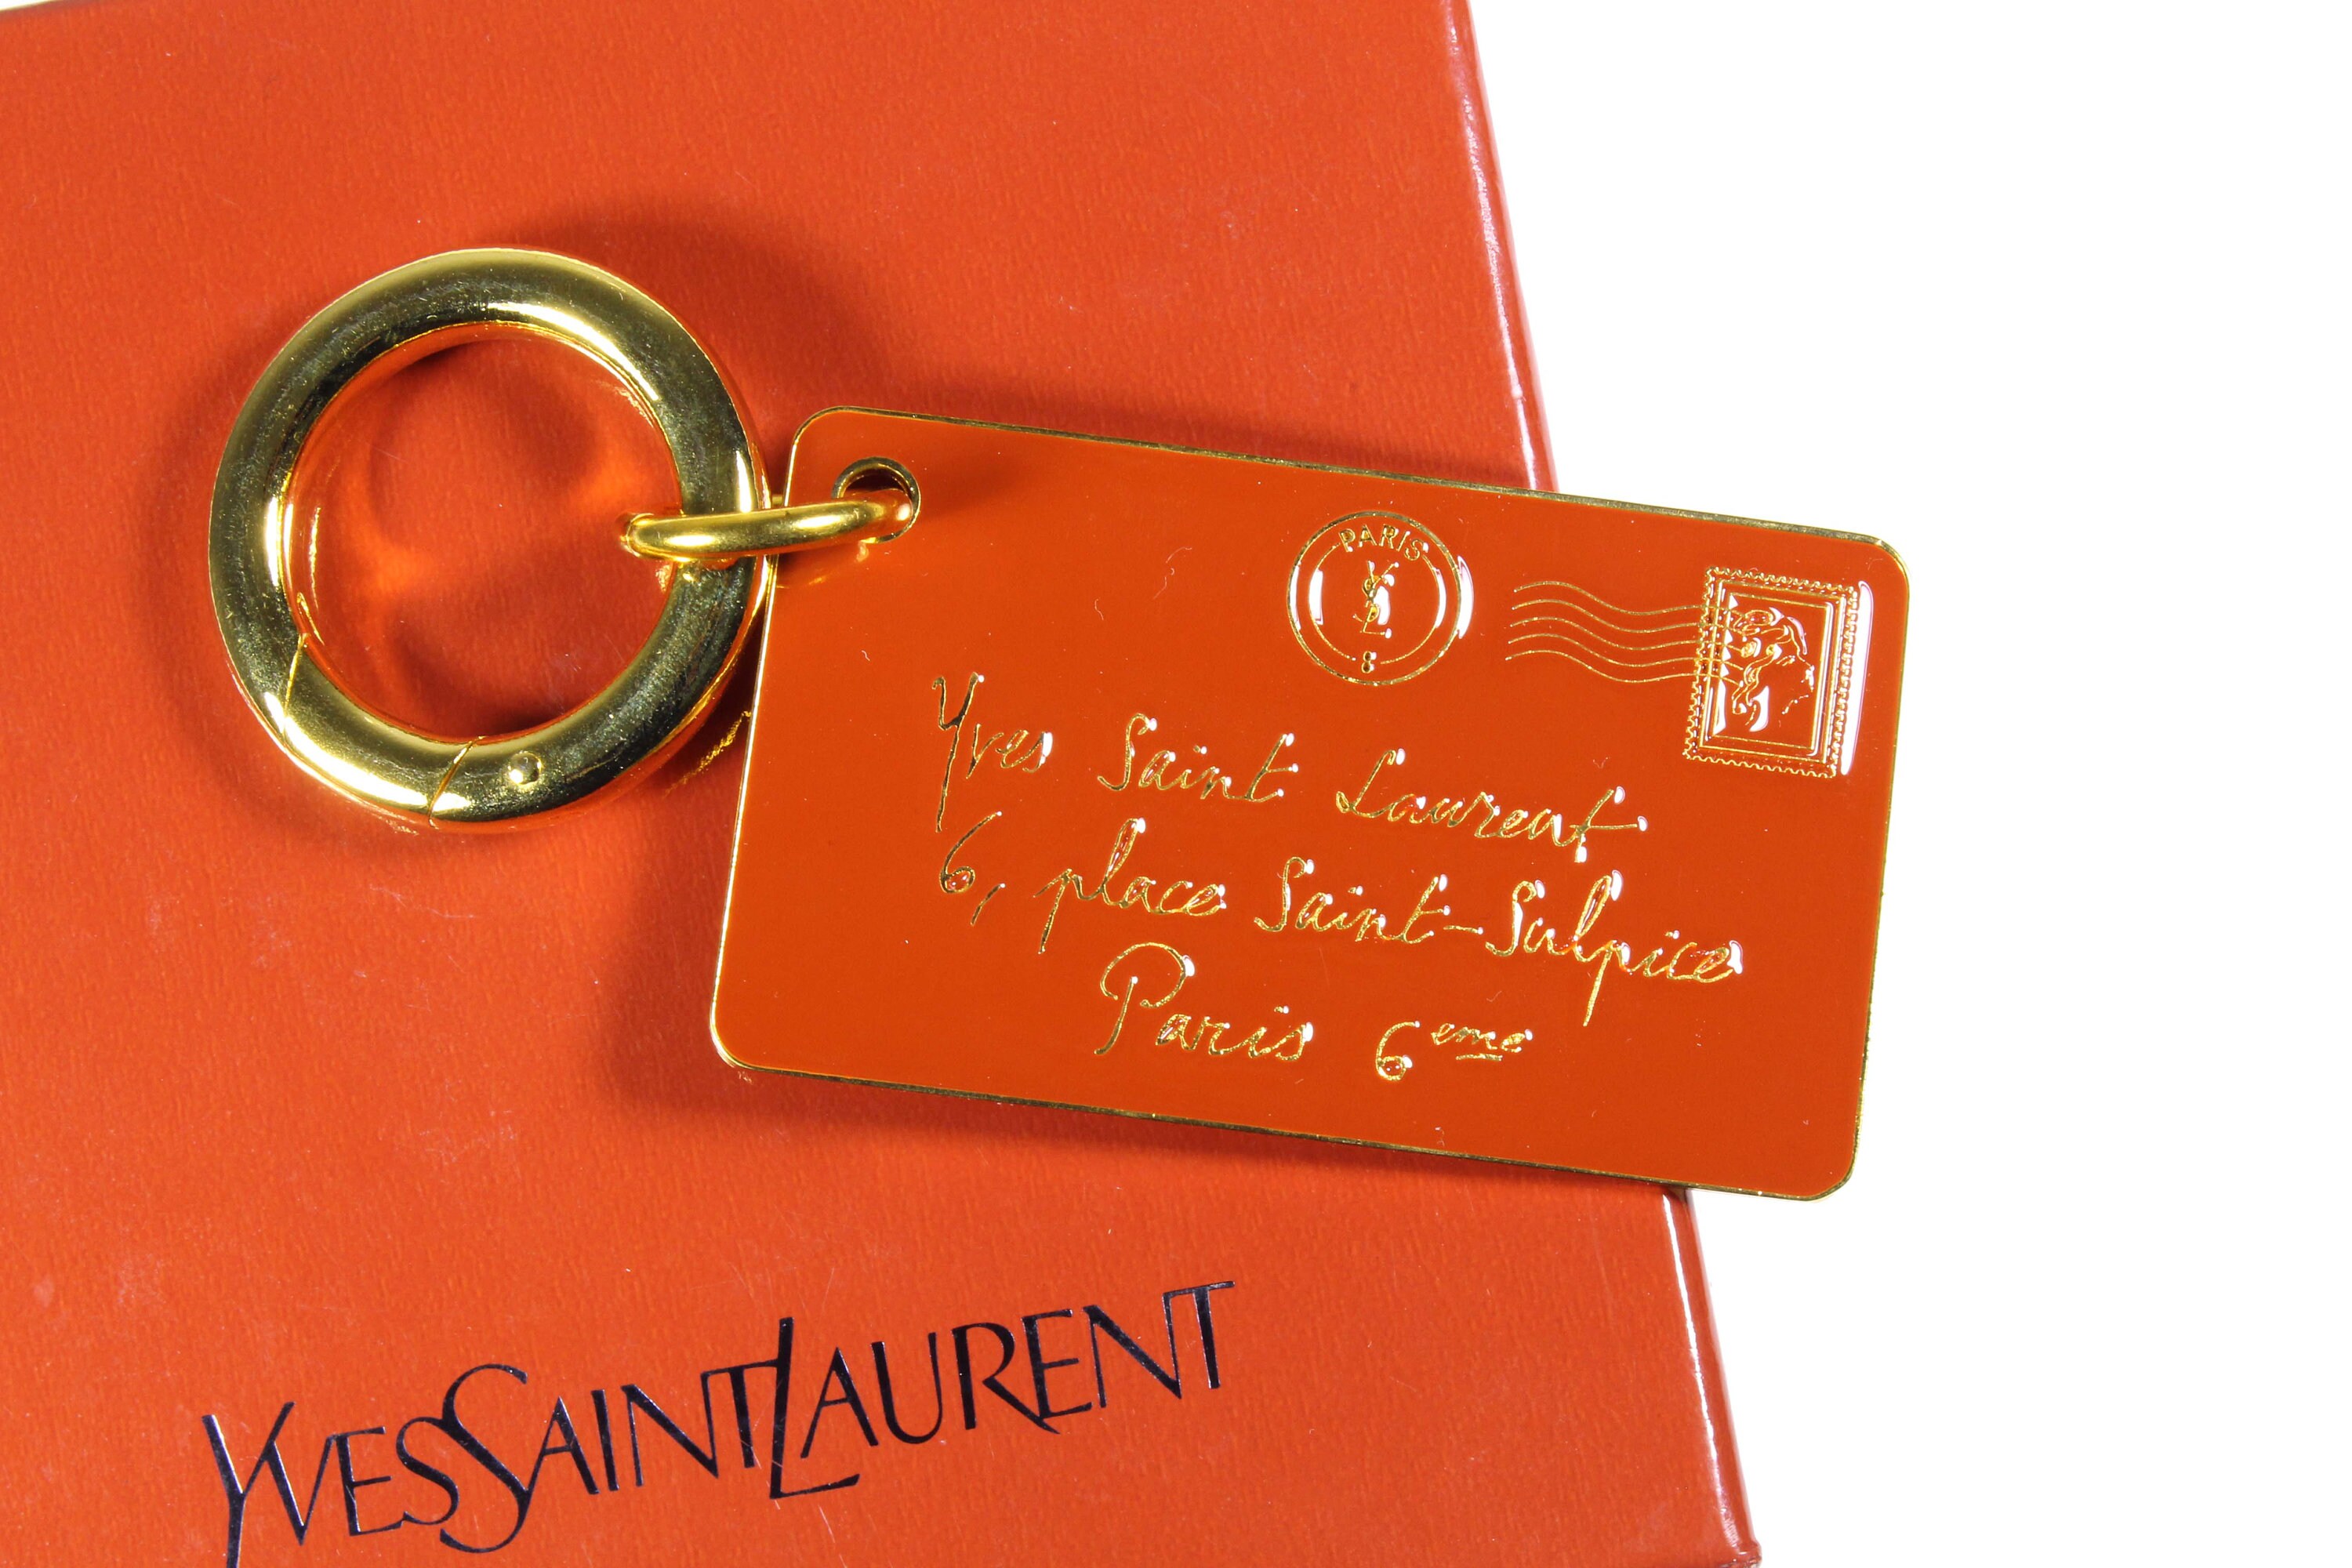 YVES SAINT LAURENT Y-mail envelope key-ring bag charm – Vintage Carwen